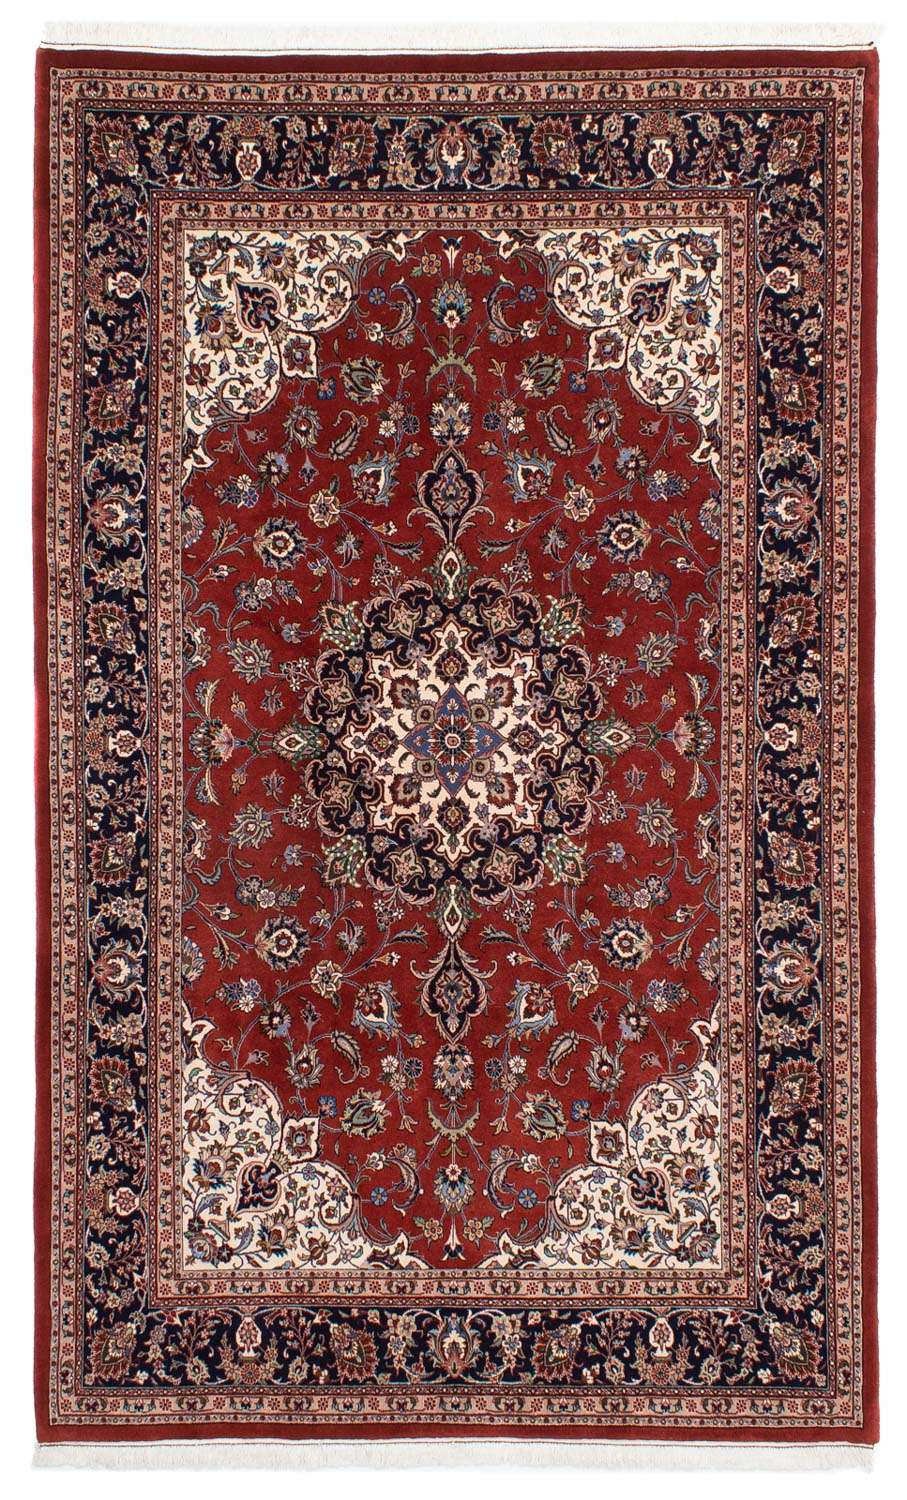 Persisk teppe - klassisk - 296 x 198 cm - rød